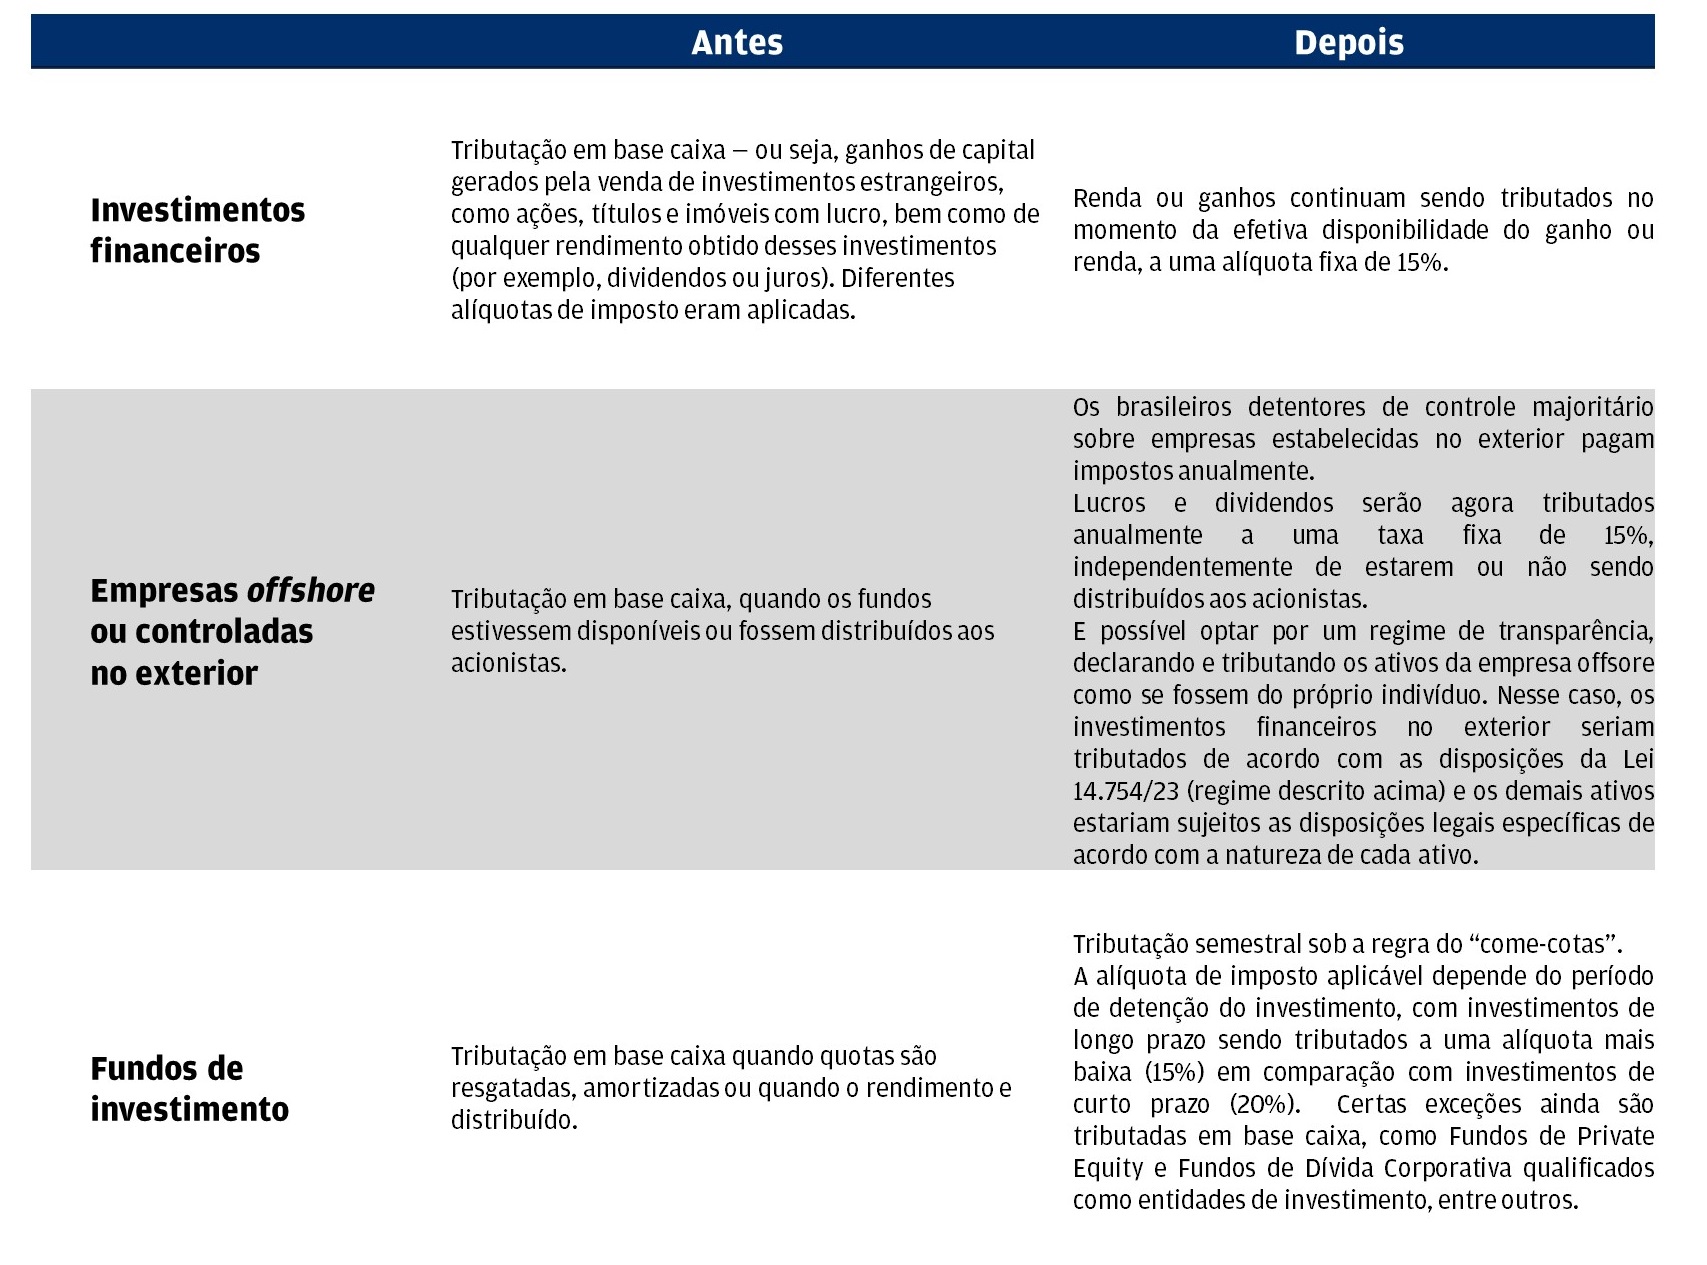 Esta tabela ilustra a reforma tributária no Brasil e como várias áreas se apresentavam antes e depois das mudanças.